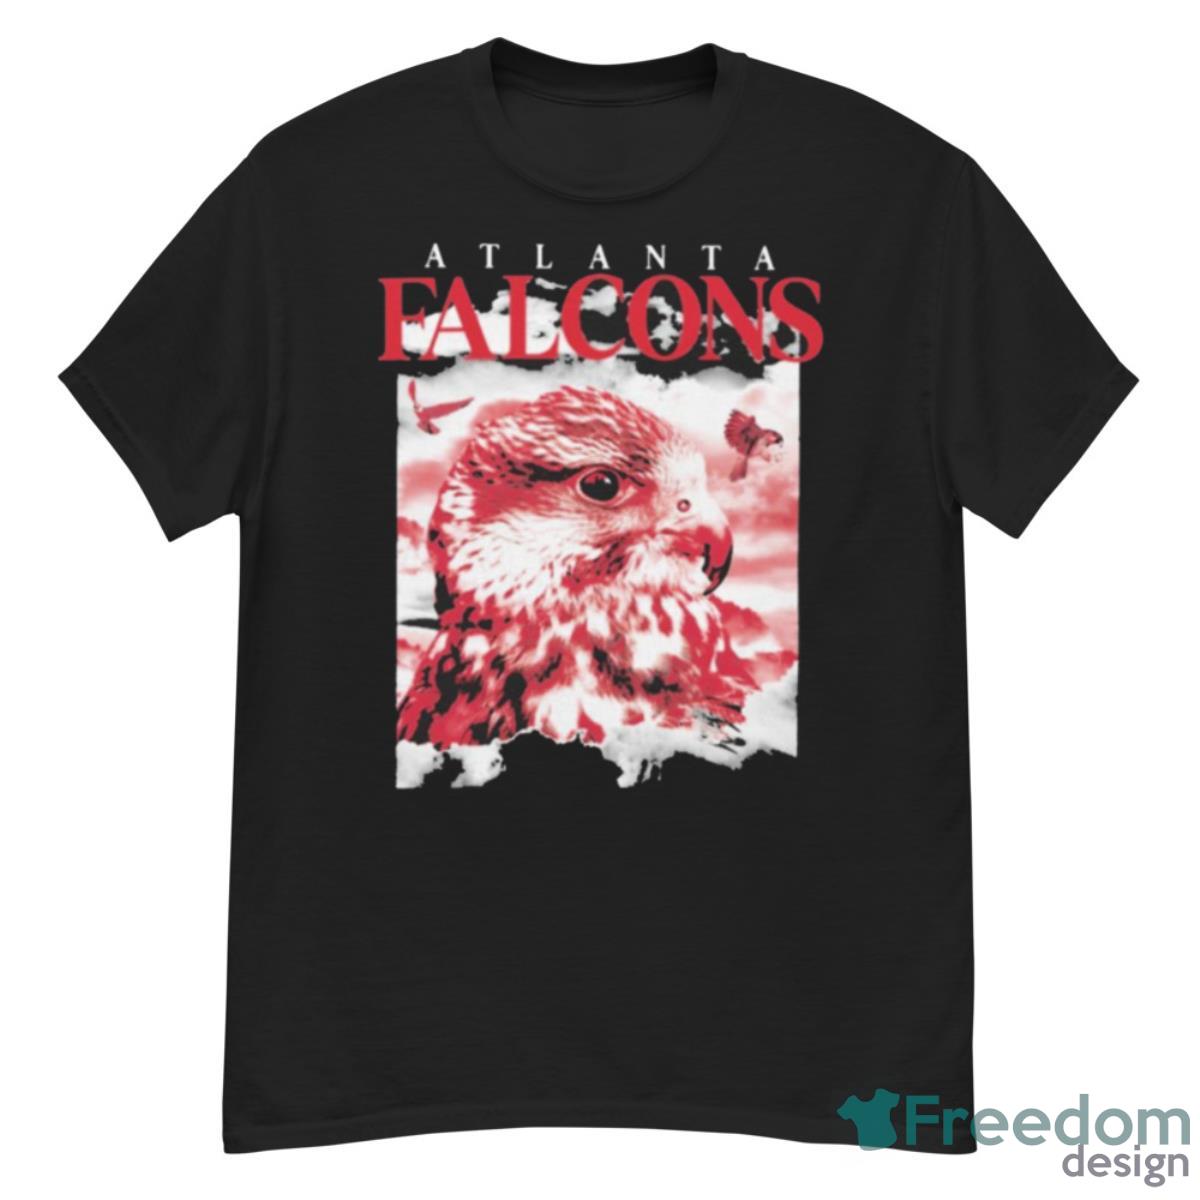 Jonnu Smith Wearing Atlanta Falcons Shirt - G500 Men’s Classic T-Shirt